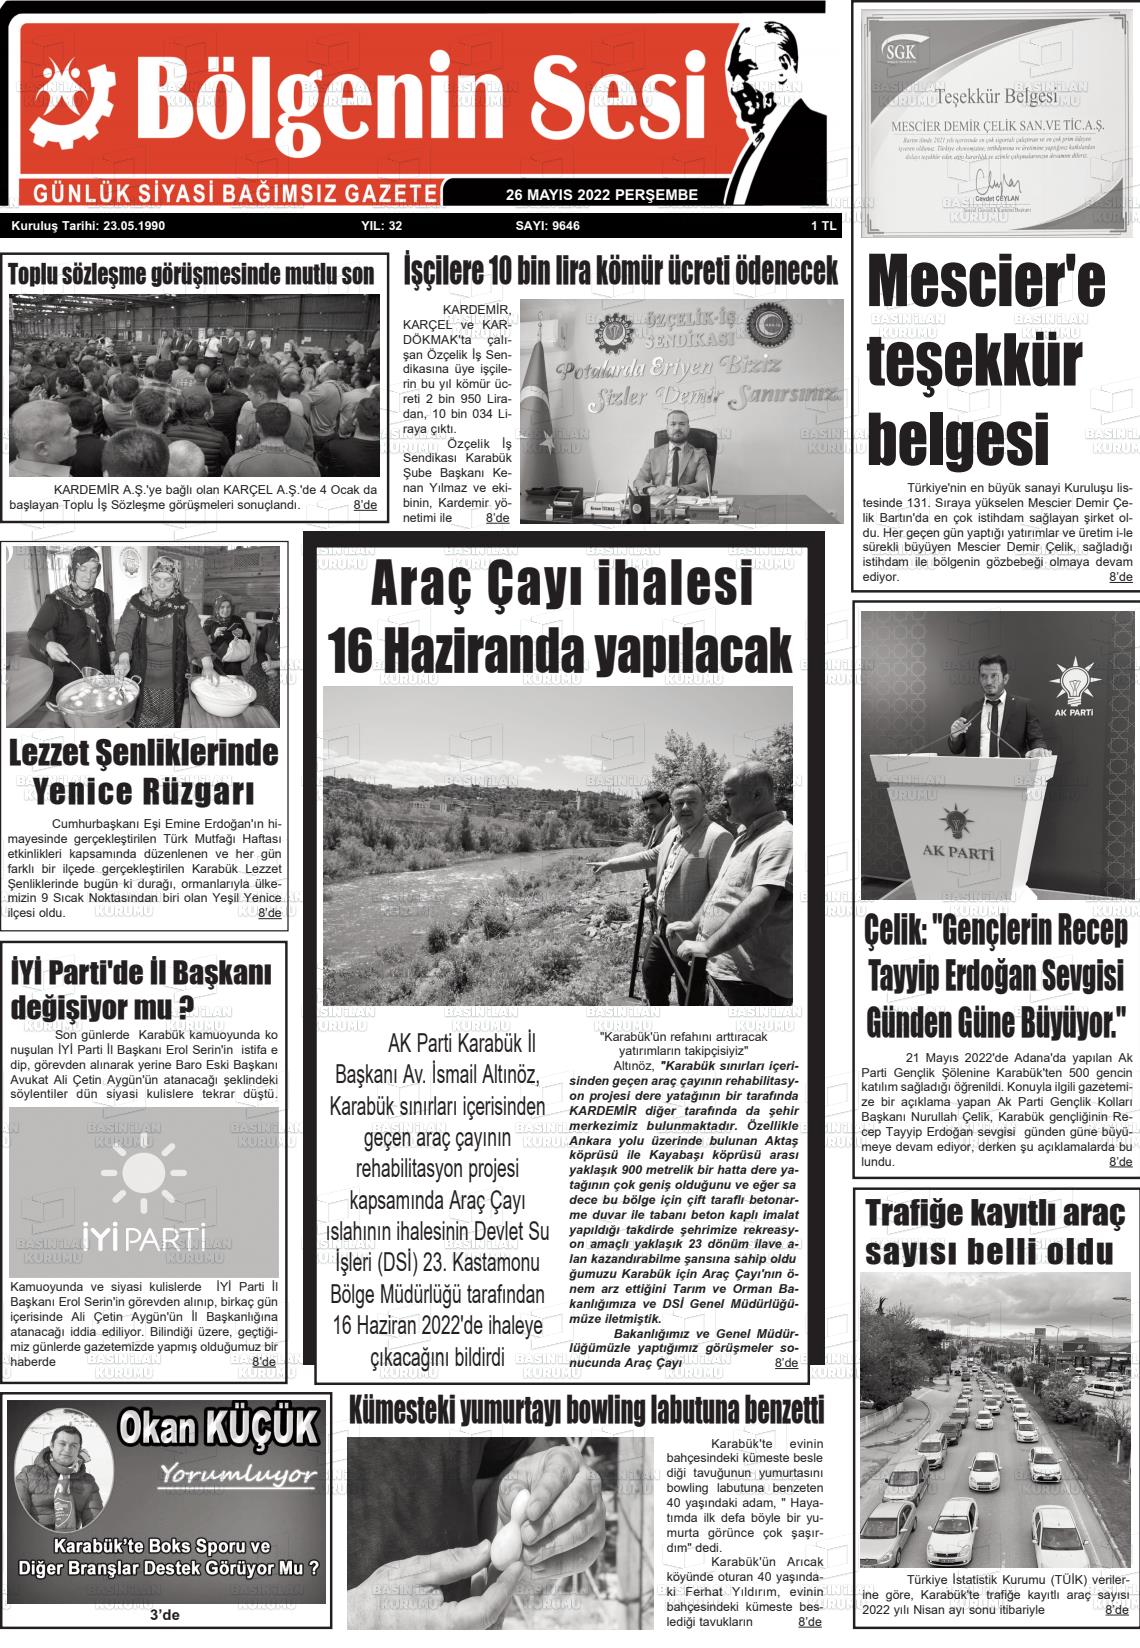 26 Mayıs 2022 Bölgenin Sesi Gazete Manşeti